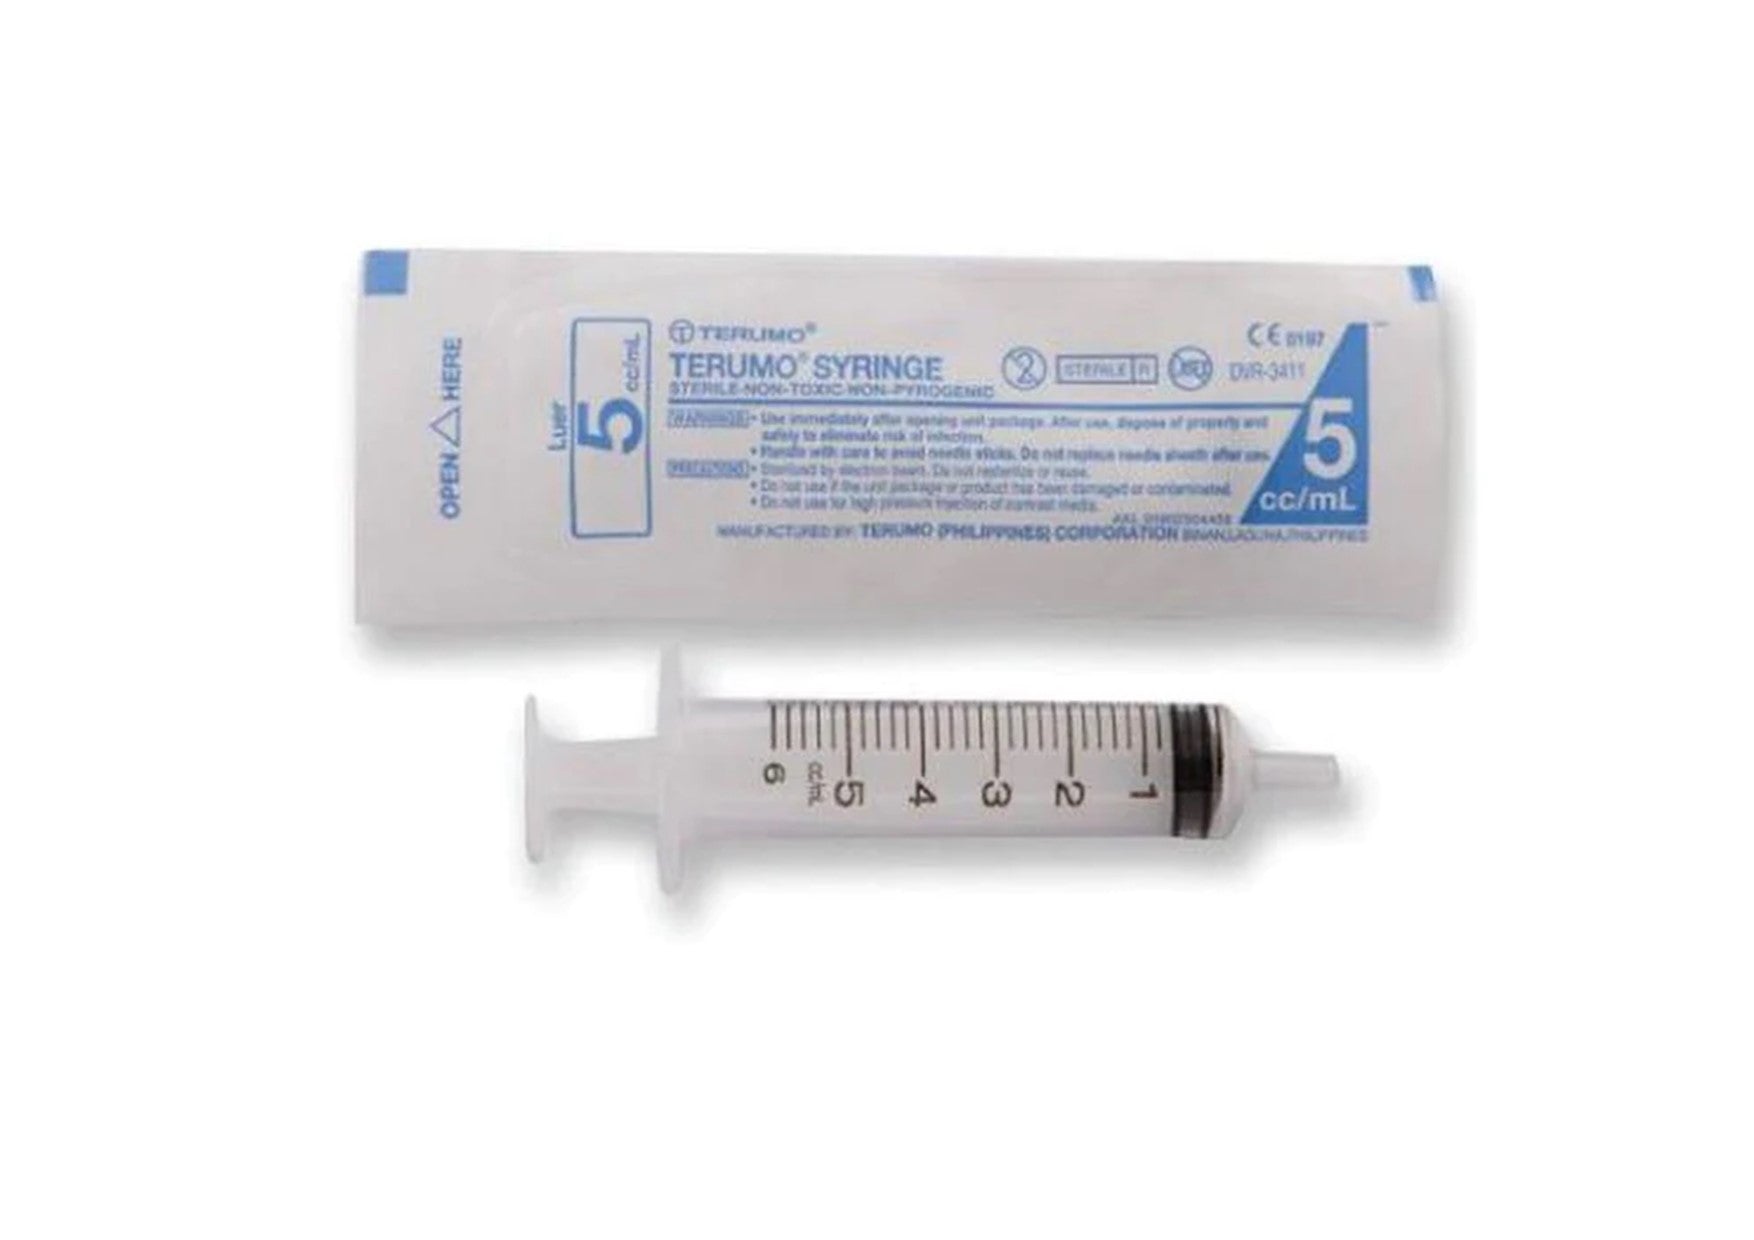 Terumo | Syringes